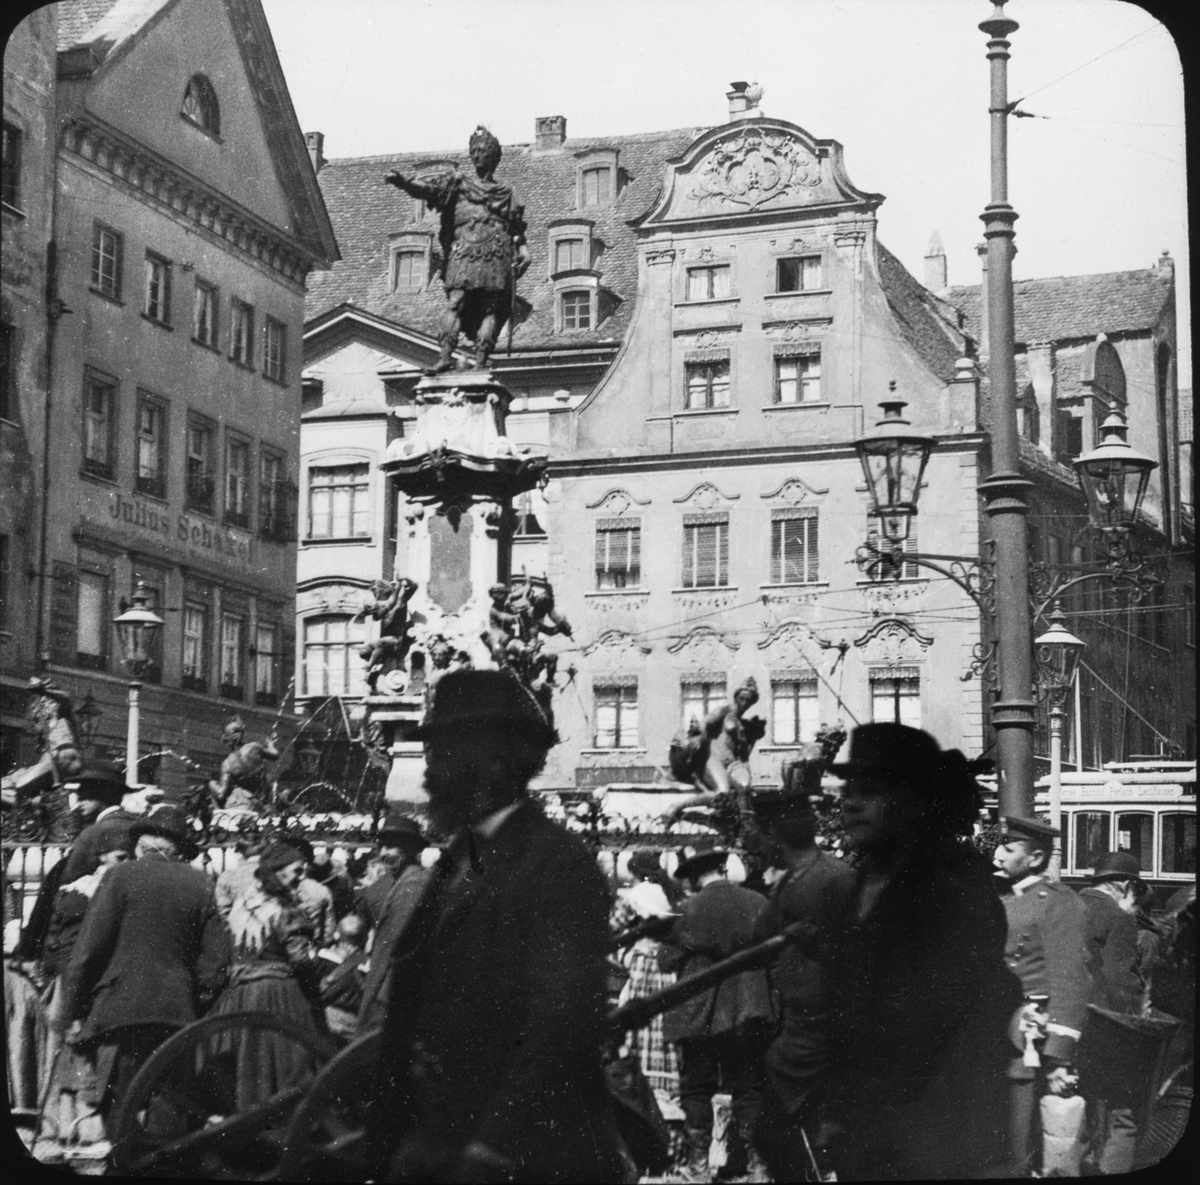 Skioptikonbild med motiv av folkvimmel kring Augustbrunnen, fontän i Augsburg.
Bilden har förvarats i kartong märkt: Augsburg 1901. 13. Text på bild: "Wiirzburg 1901".